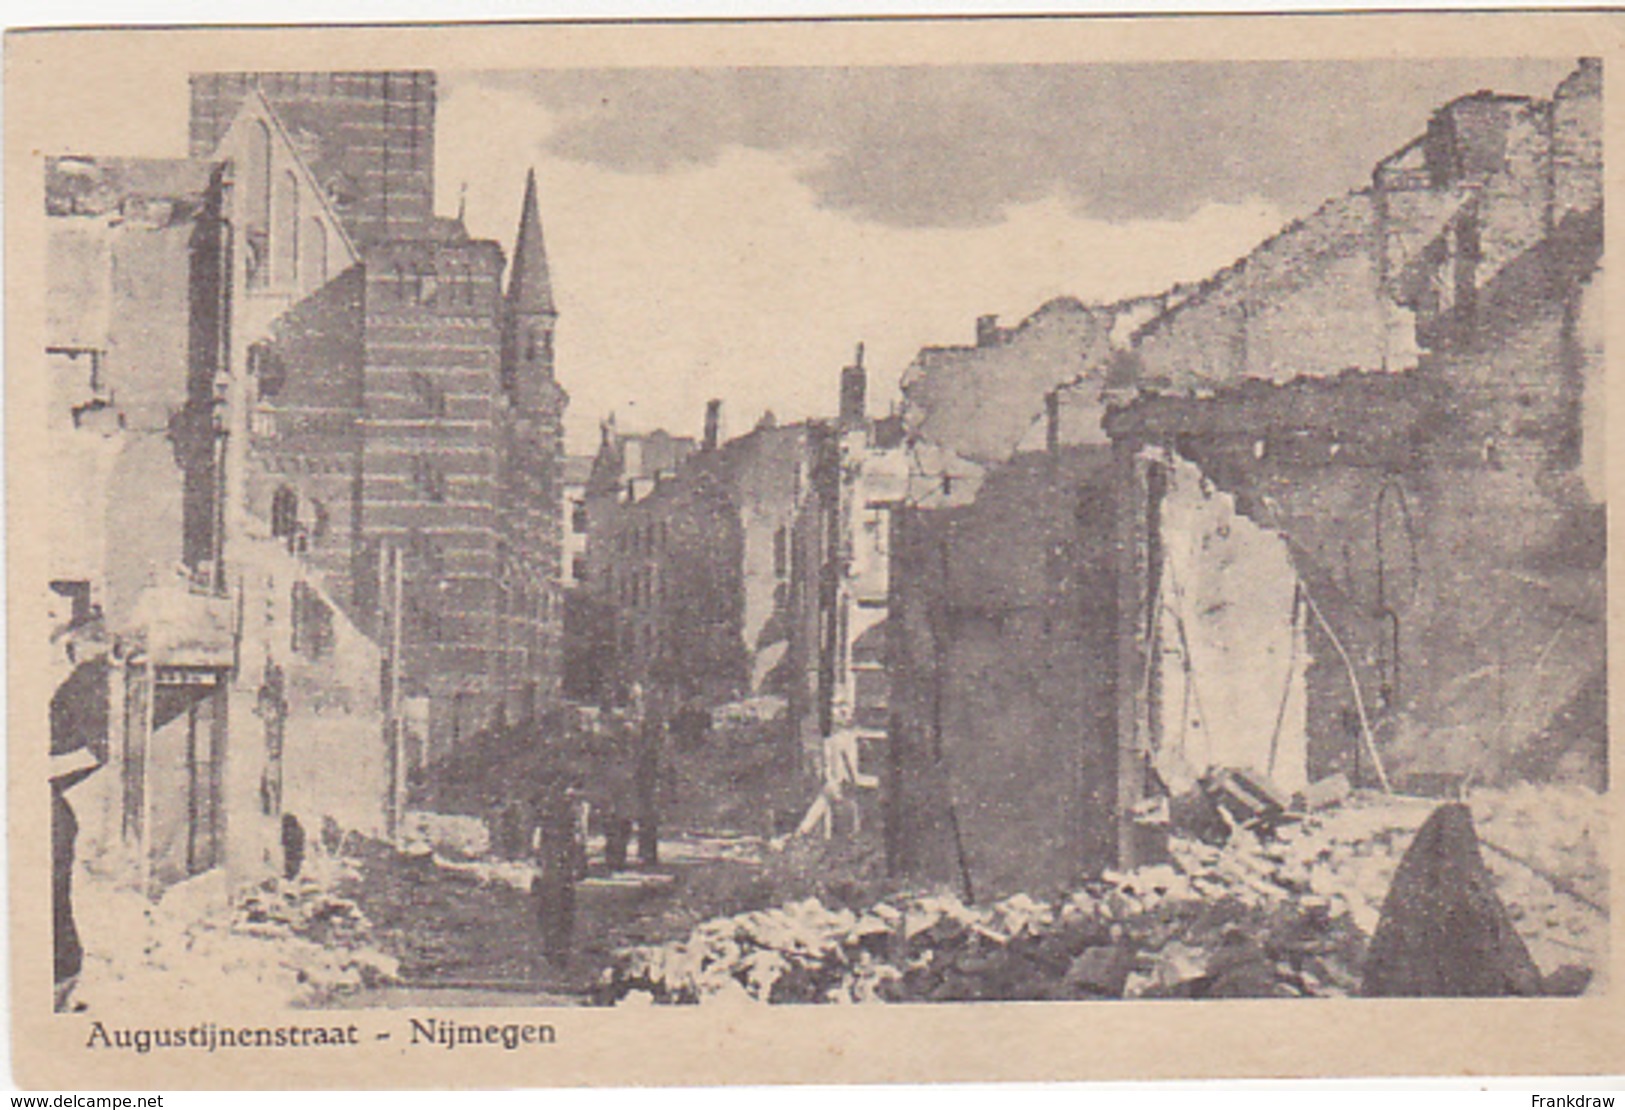 Postcard - Nijmegen - Augustijnenstraat - After Bombardment  (WWII) - VG - Ohne Zuordnung